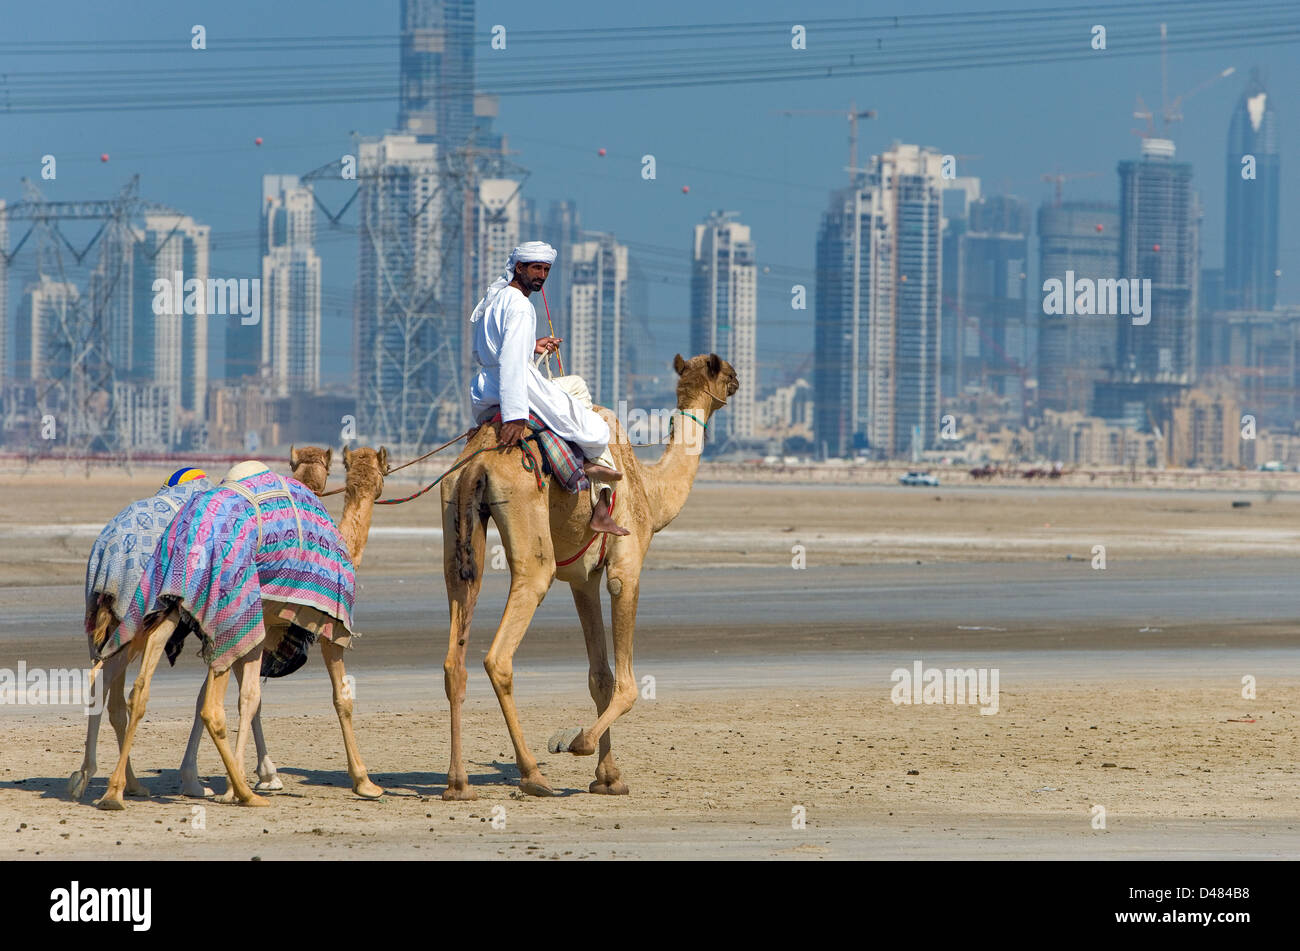 Dubaï, les courses de chameaux dans la formation à l'extérieur de la ville Banque D'Images